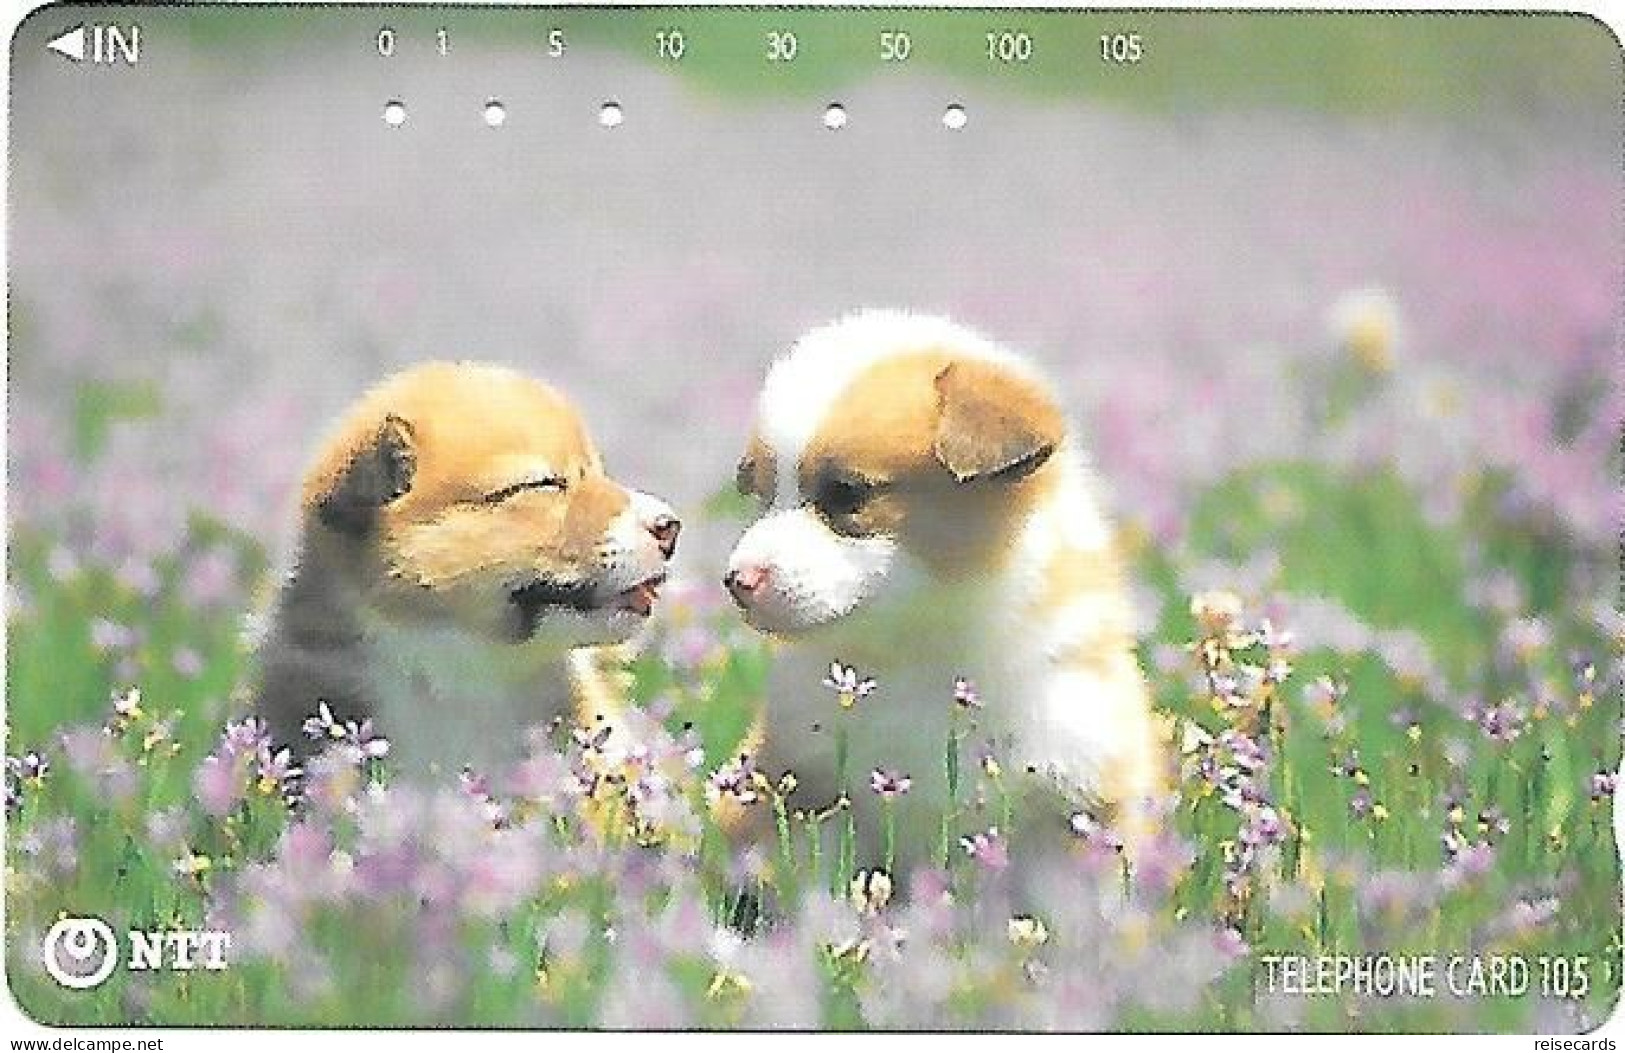 Japan: NTT - 111-059 Dogs In The Flower Field - Japan